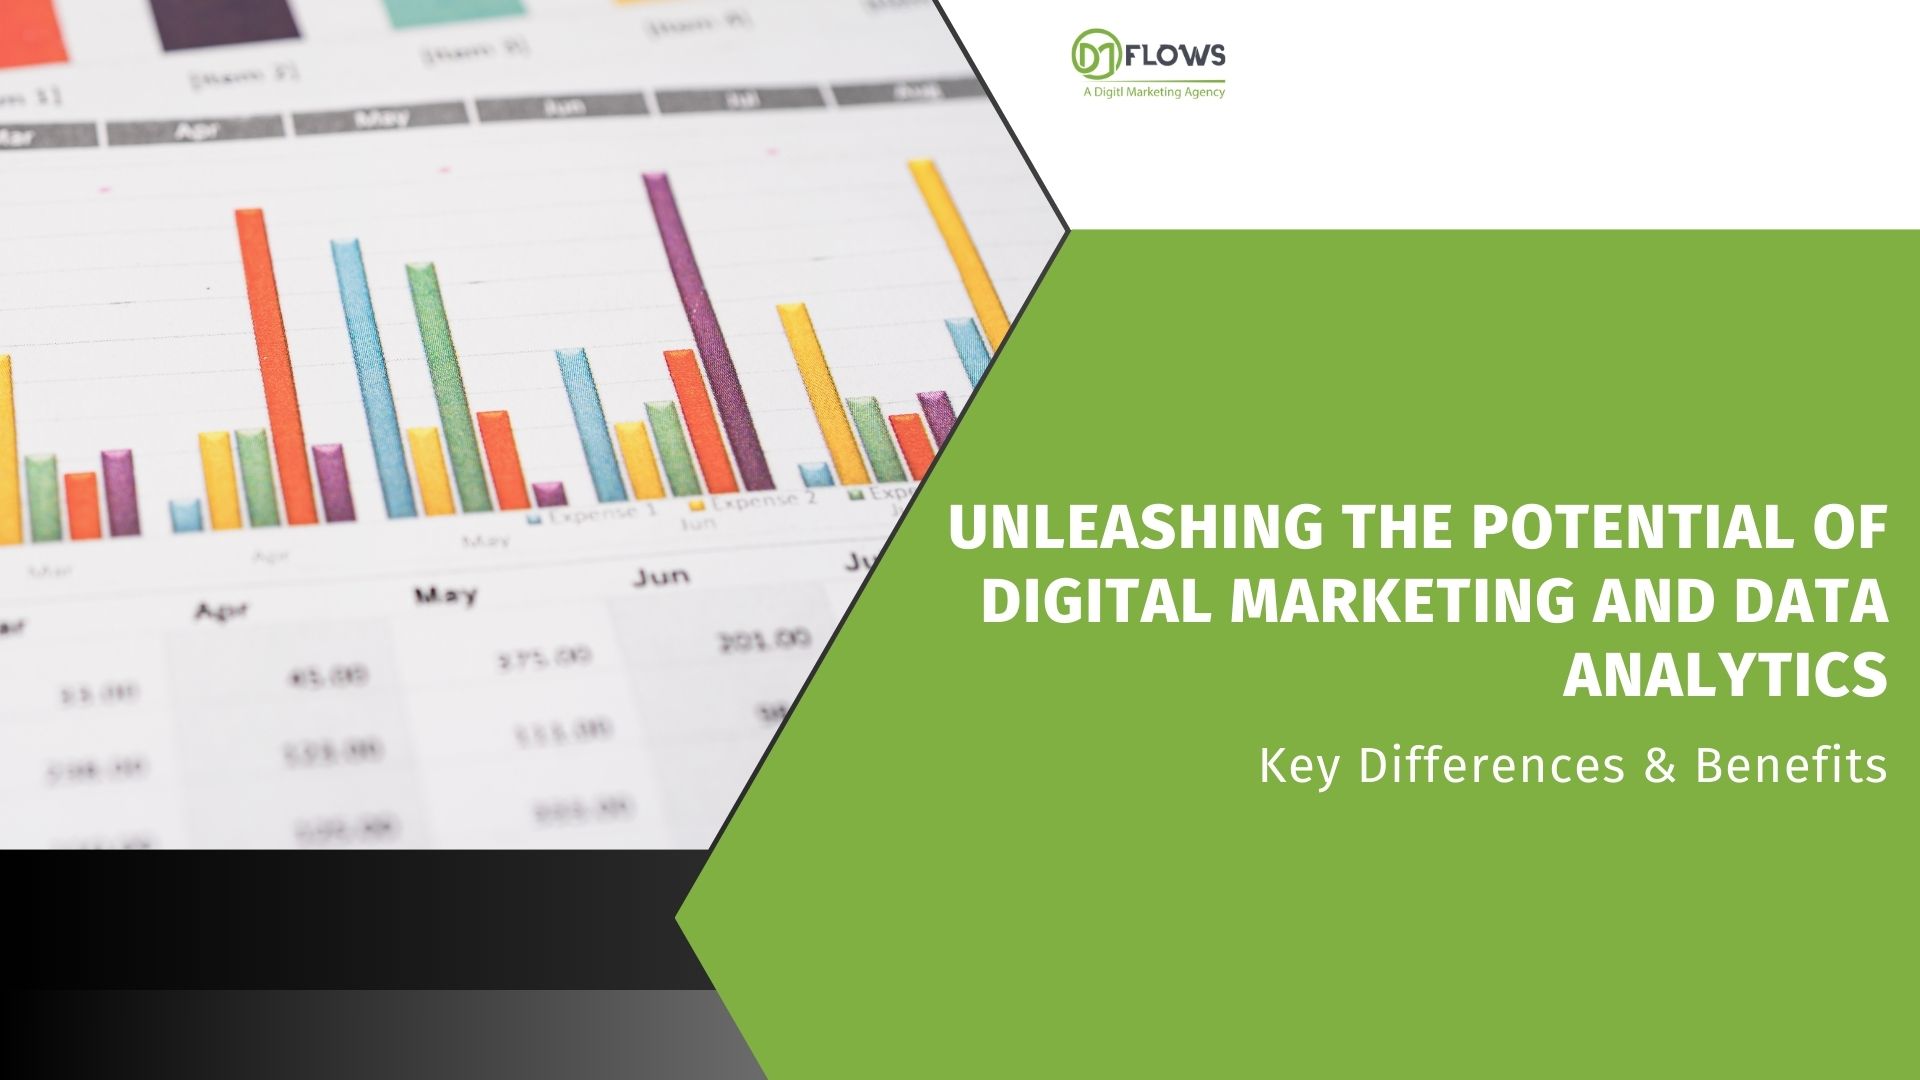 Digital Marketing And Data Analytics